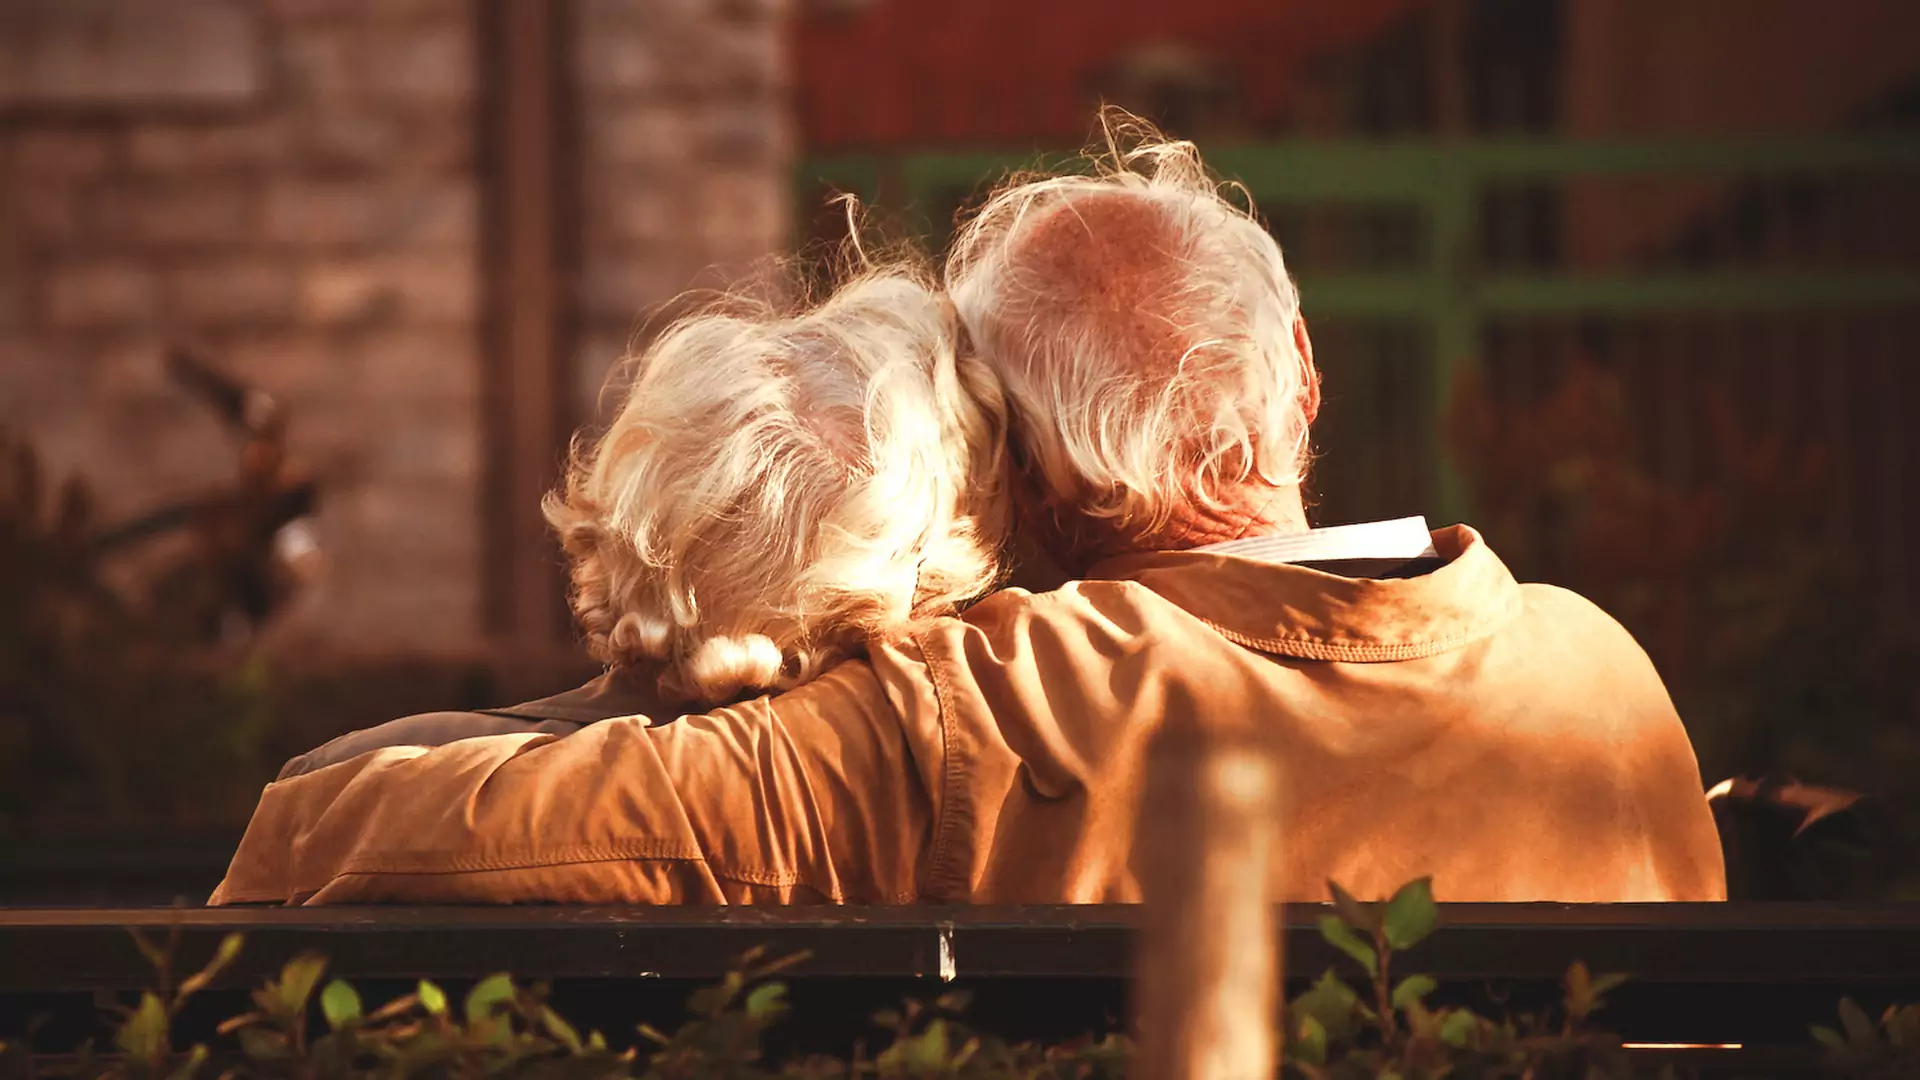 Historia tych staruszków przywraca wiarę w miłość: mają łącznie 187 lat i wkrótce wezmą ślub